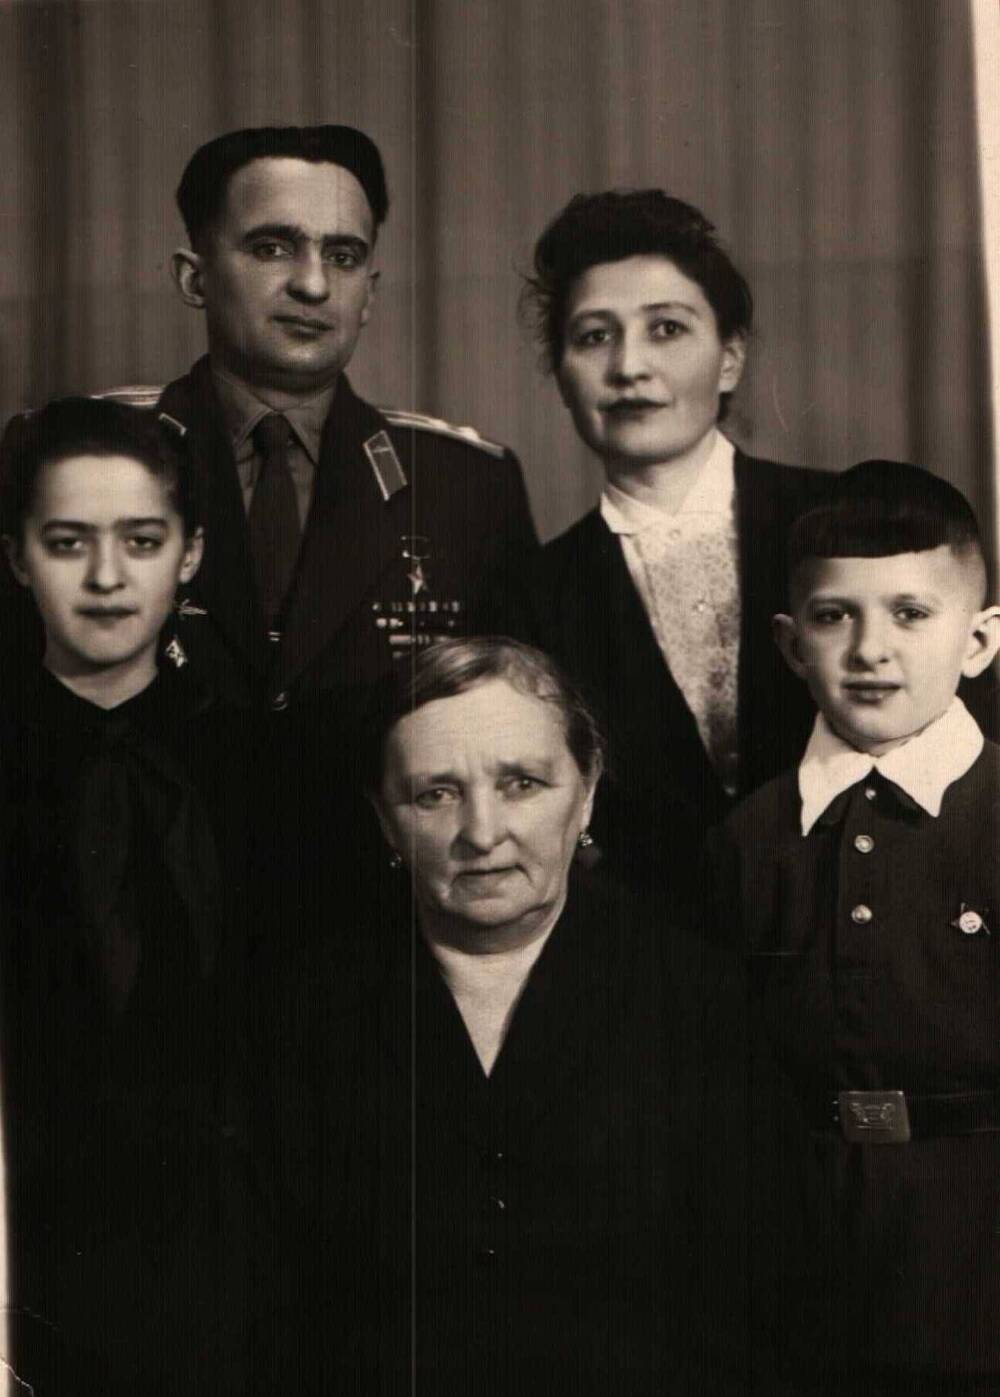 Фото групповое. Кумсков В.А. с семьей, 1960 г.